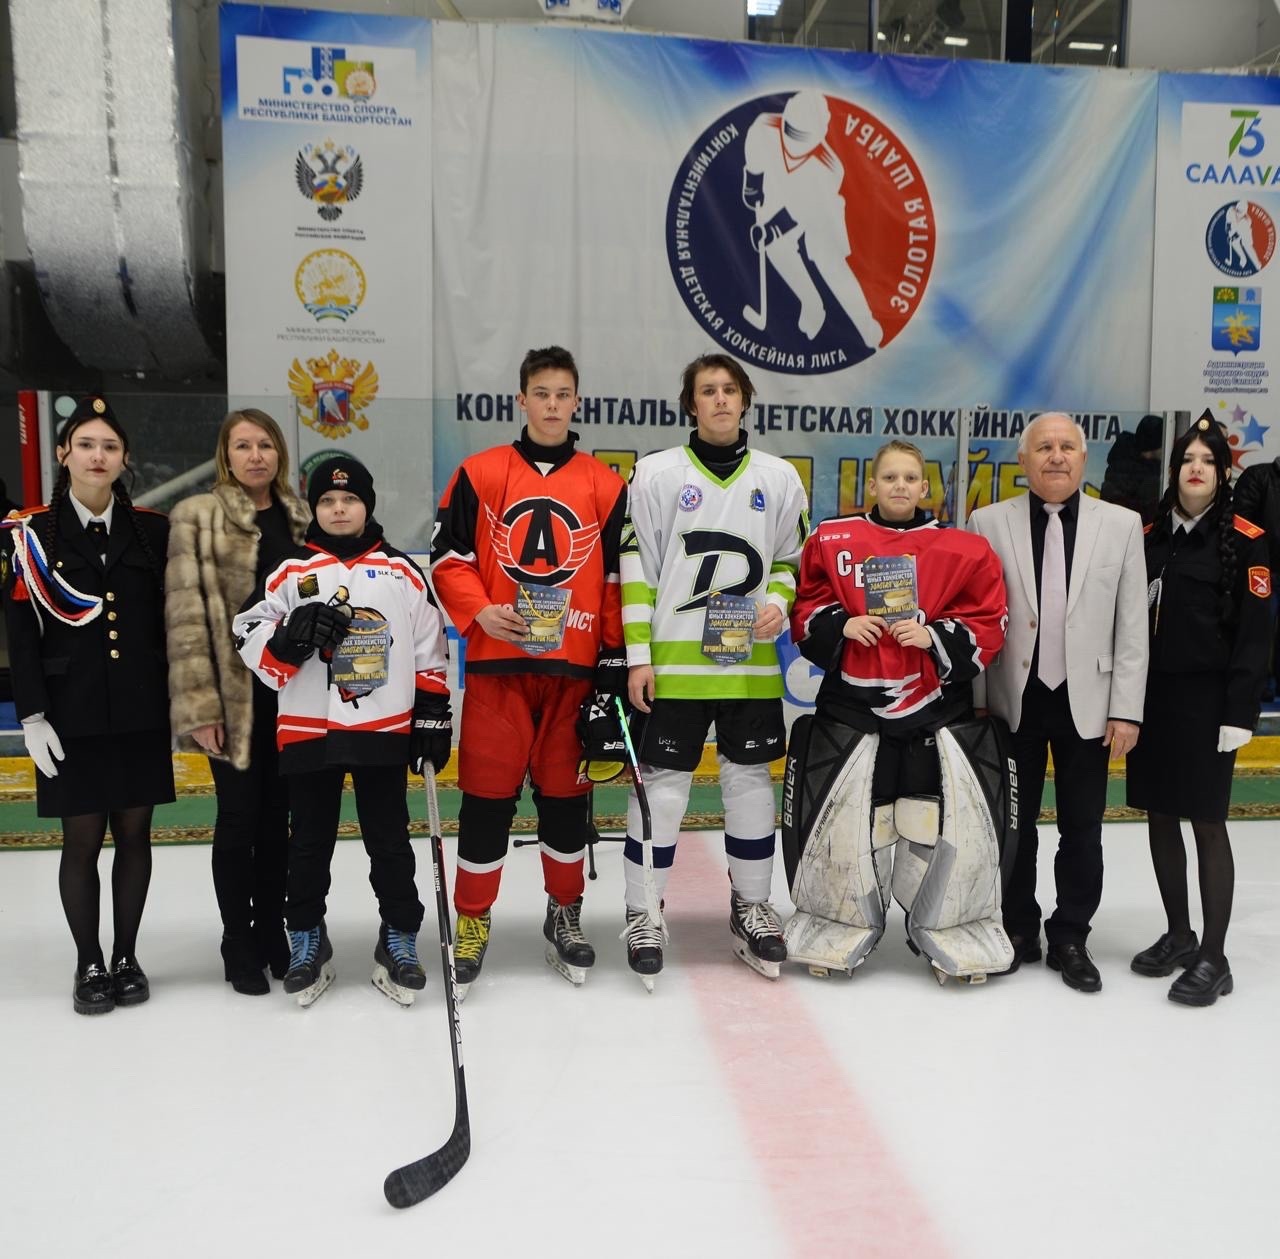 Всероссийские соревнования юных хоккеистов "Золотая шайба"